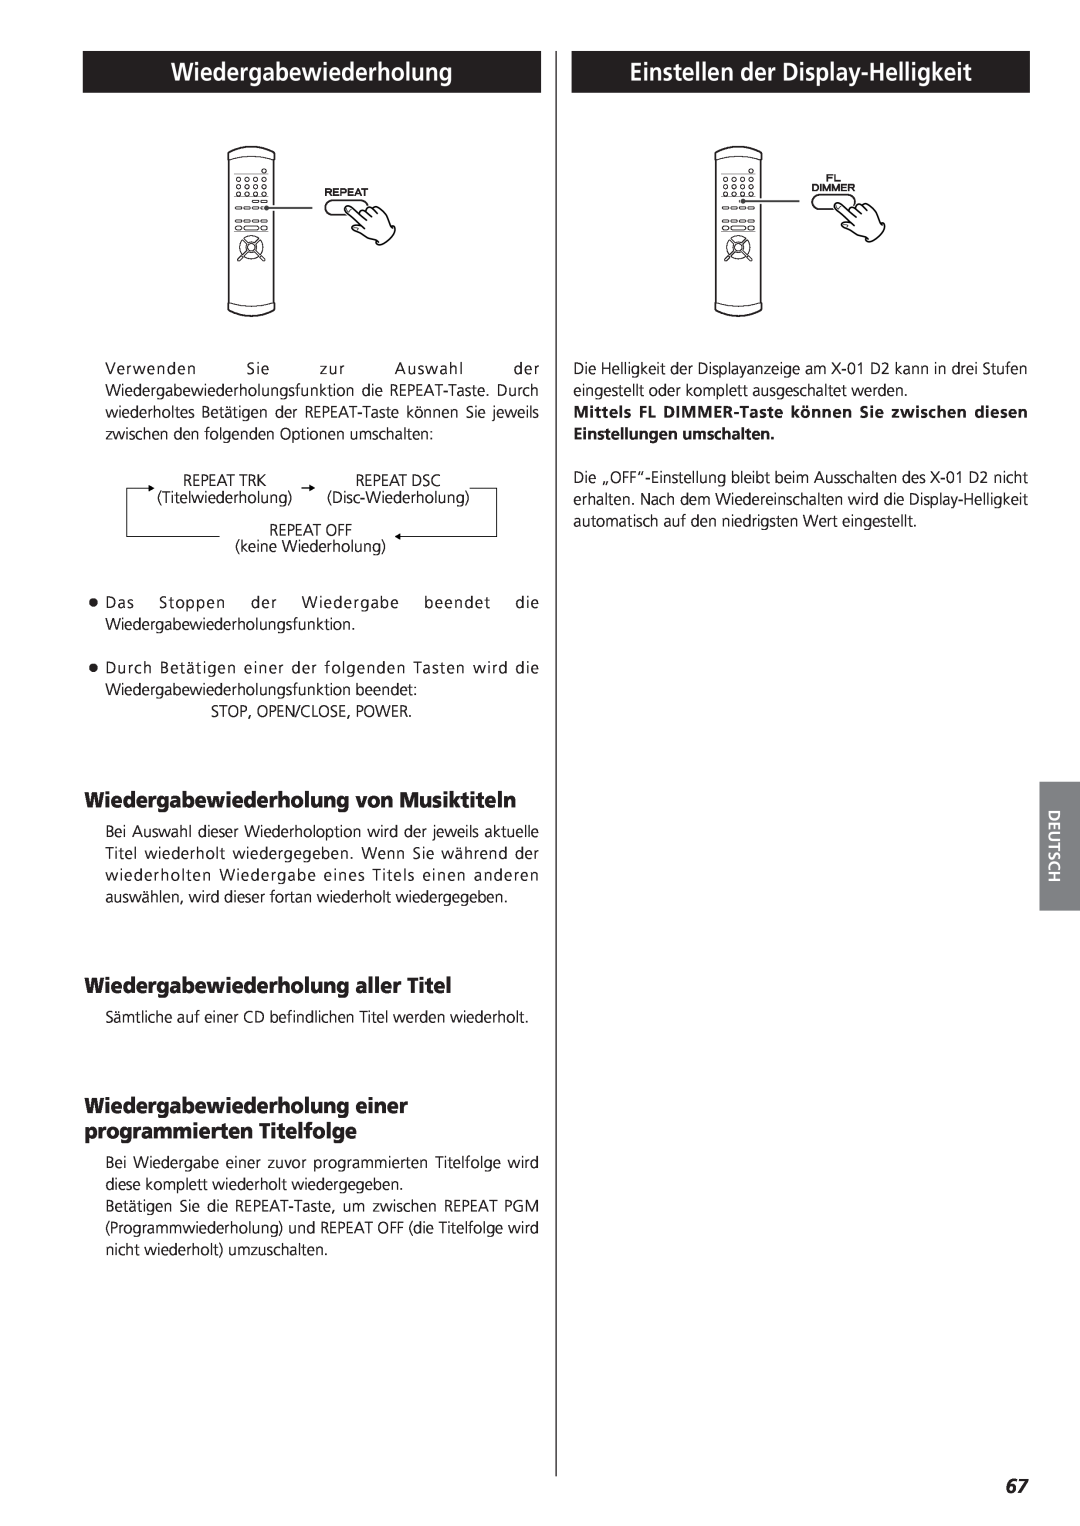 Teac X-01 D2 owner manual Einstellen der Display-Helligkeit, Wiedergabewiederholung von Musiktiteln, Deutsch 